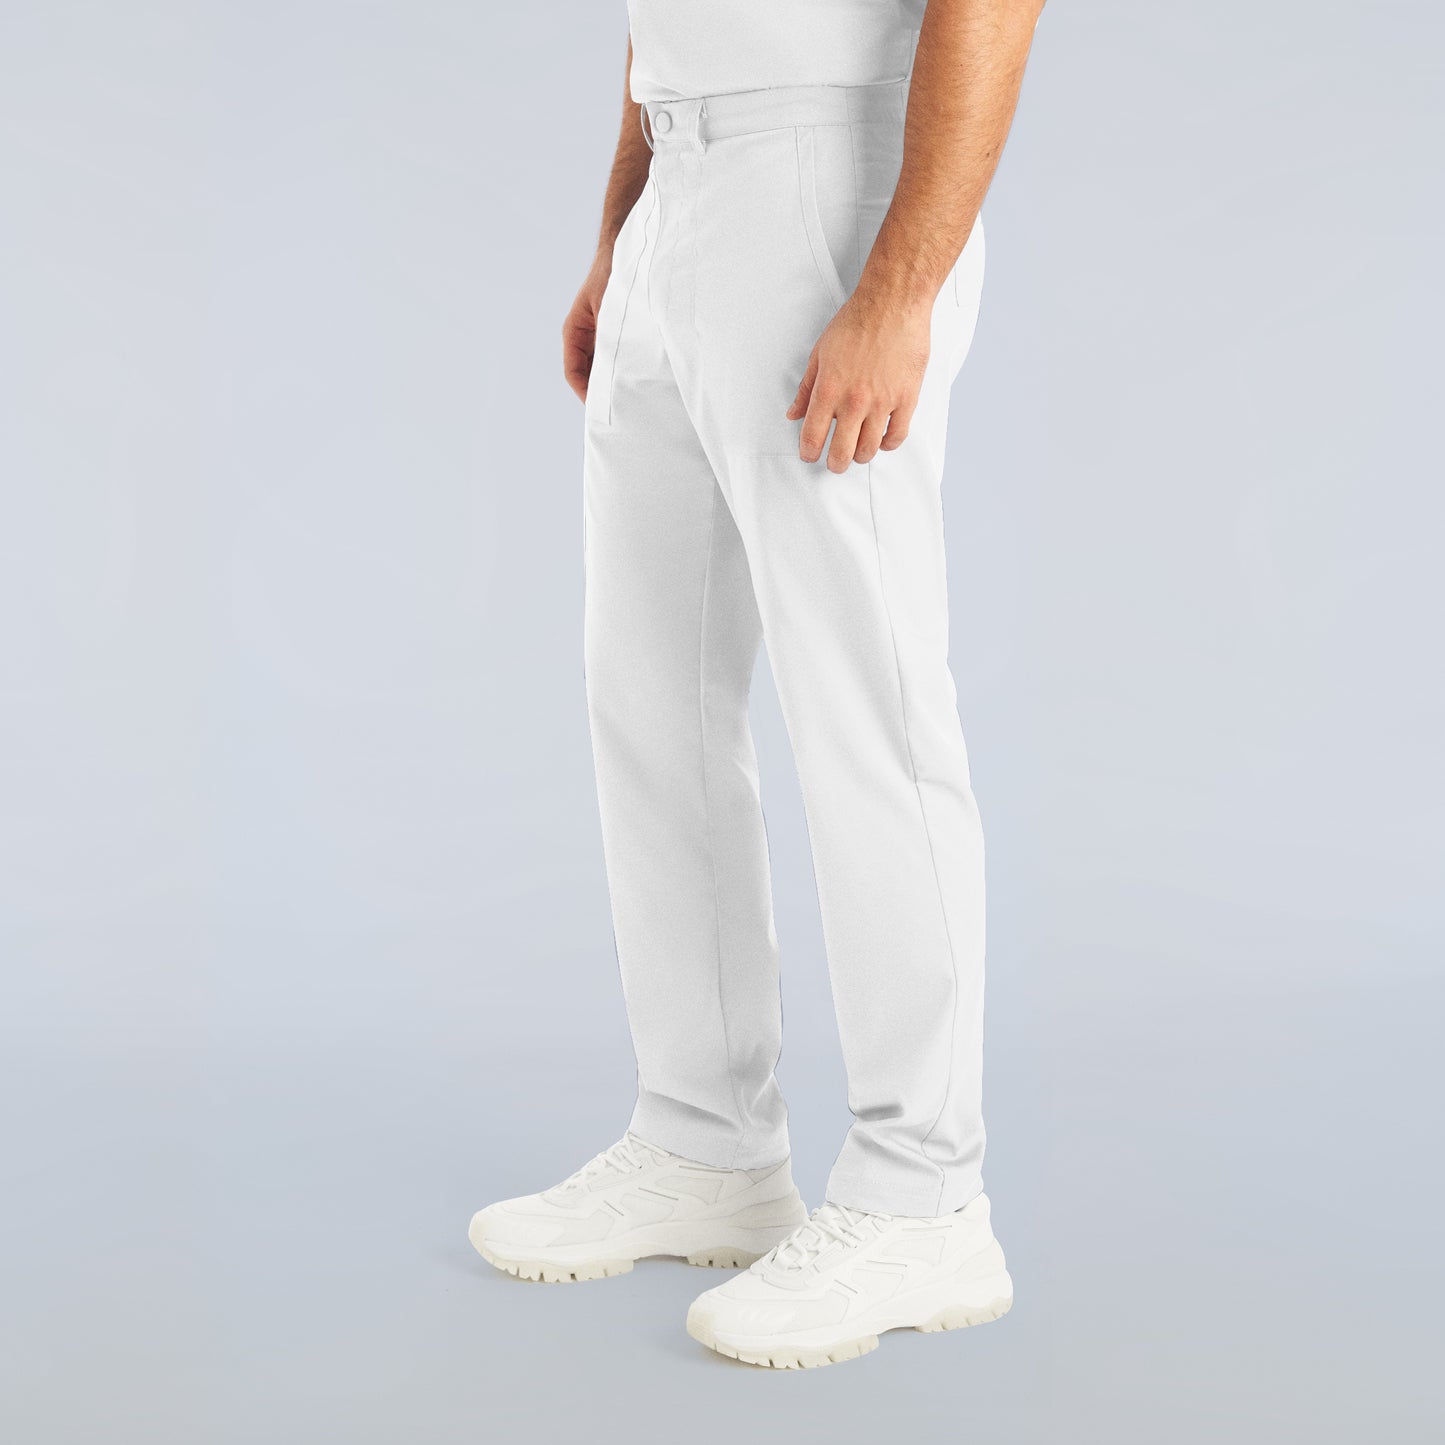 Pantalon droit homme - PROFLEX - L408T long